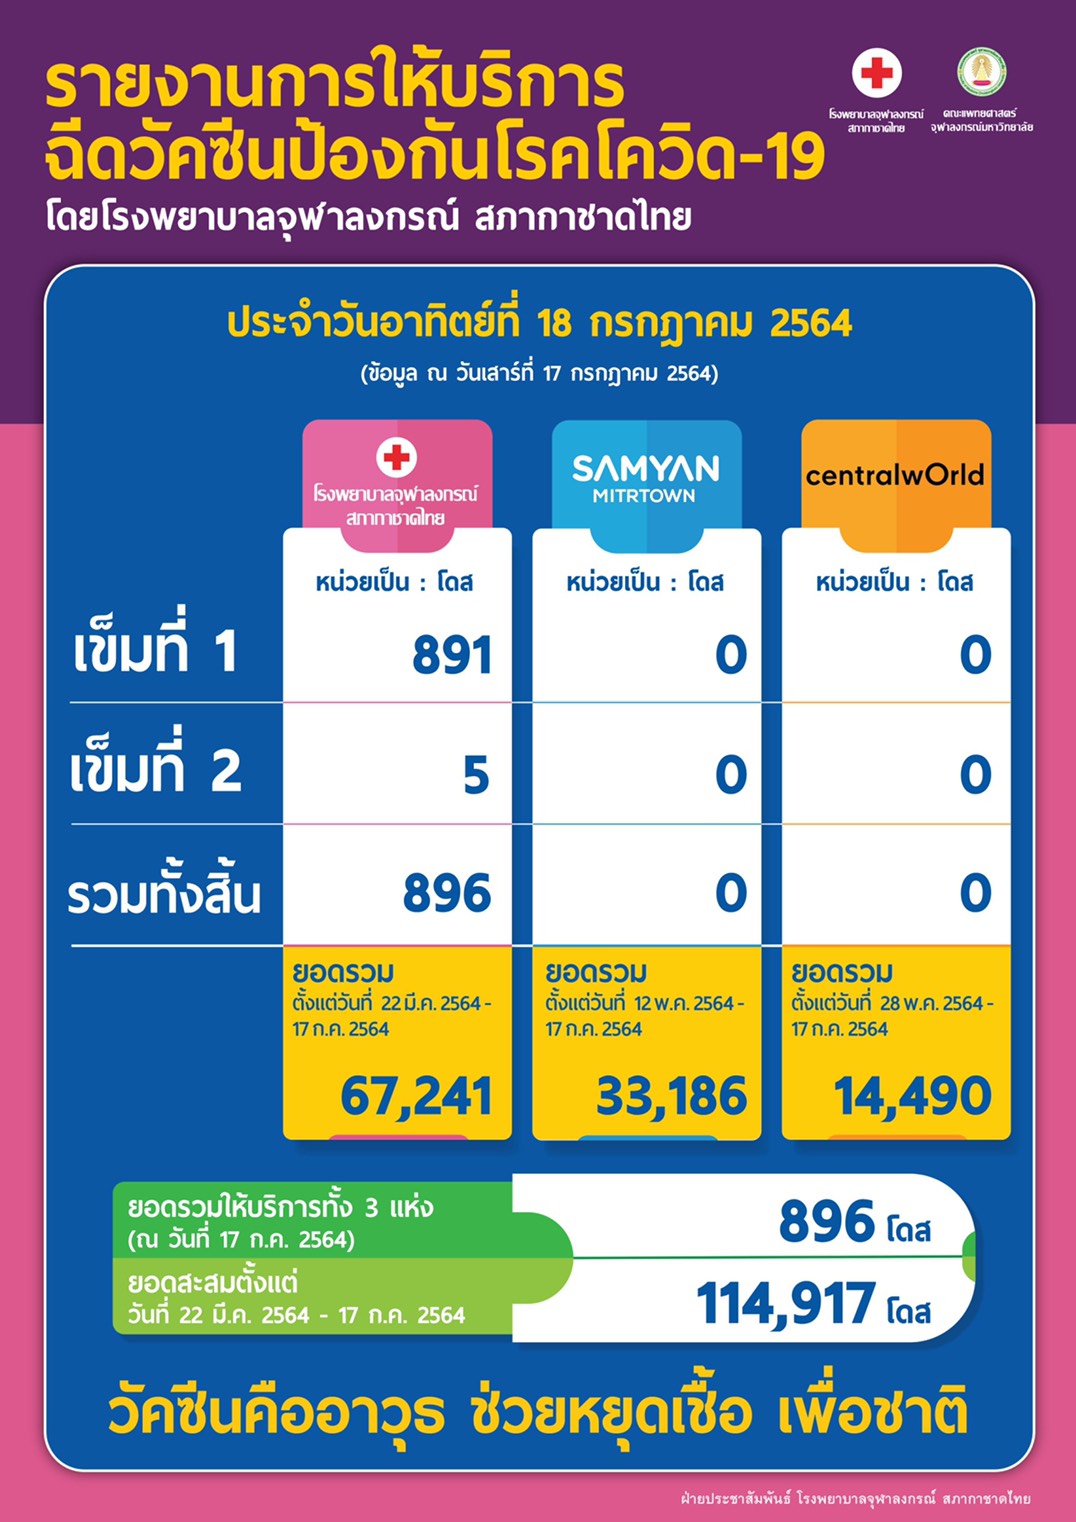 รายงานการให้บริการฉีดวัคซีนป้องกันโรคโควิด-19 โดยโรงพยาบาลจุฬาลงกรณ์ สภากาชาดไทย ประจำวันอาทิตย์ที่ 18 กรกฎาคม 2564